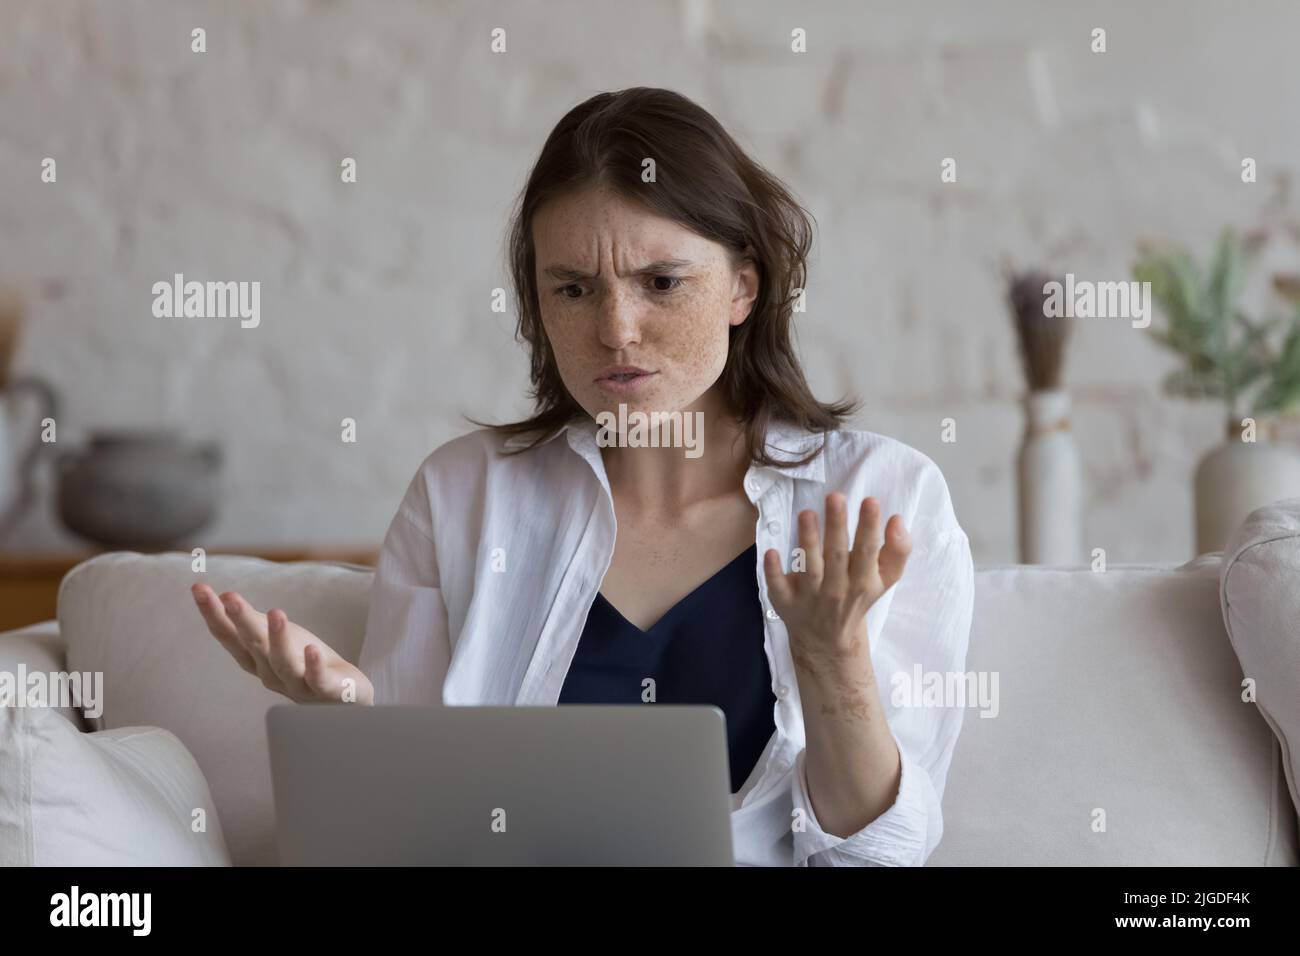 Frau, die auf den Laptop starrt, fühlt sich aufgrund eines defekten Geräts wütend Stockfoto